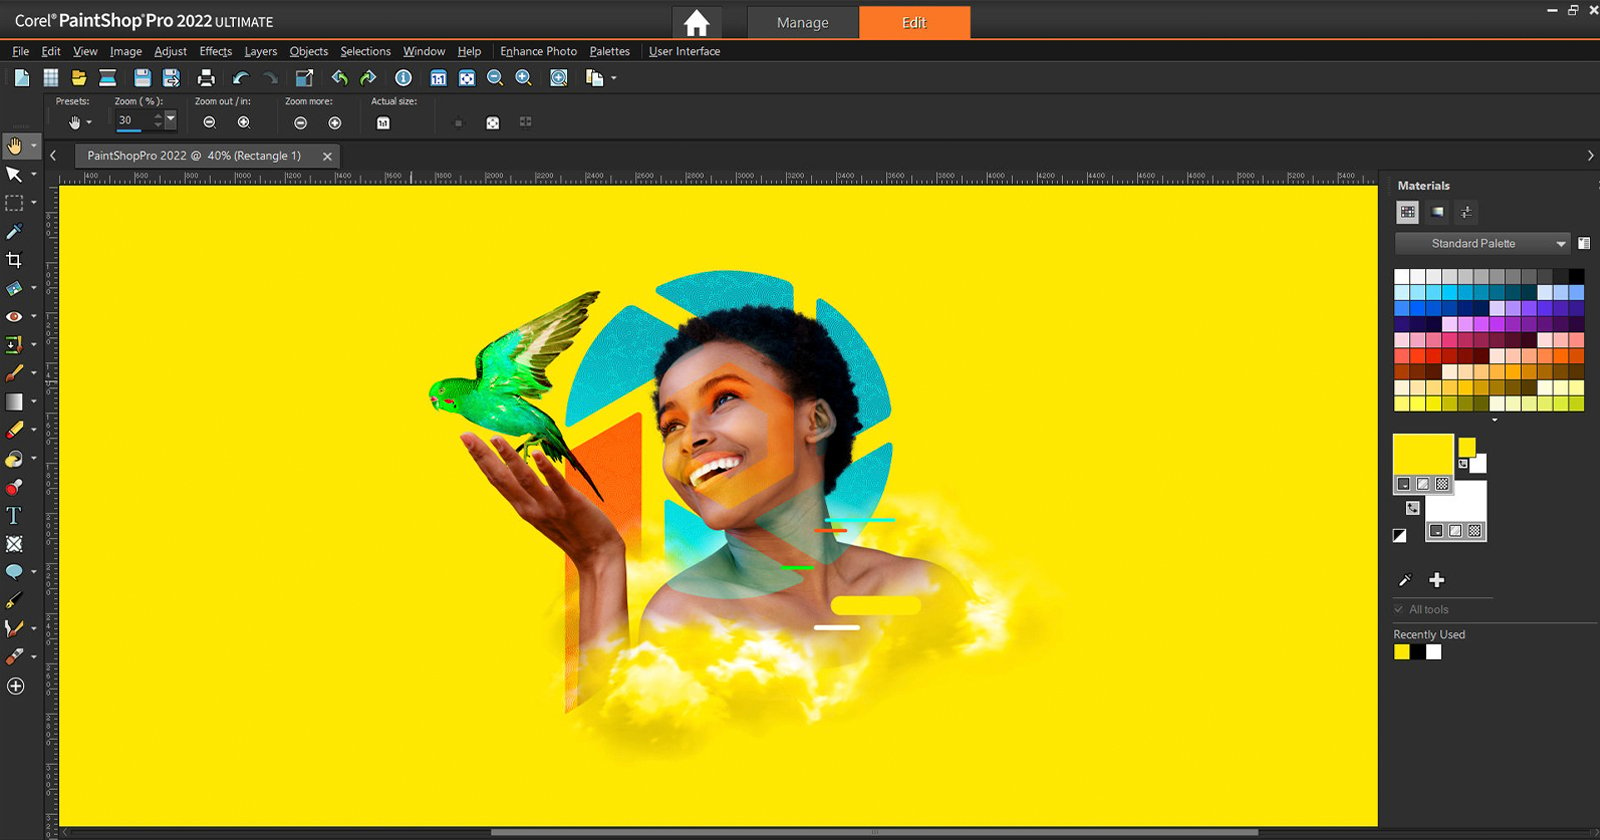 Corel's PaintShop Pro 2022 Comes With New AI Photo Editing Features |  PetaPixel